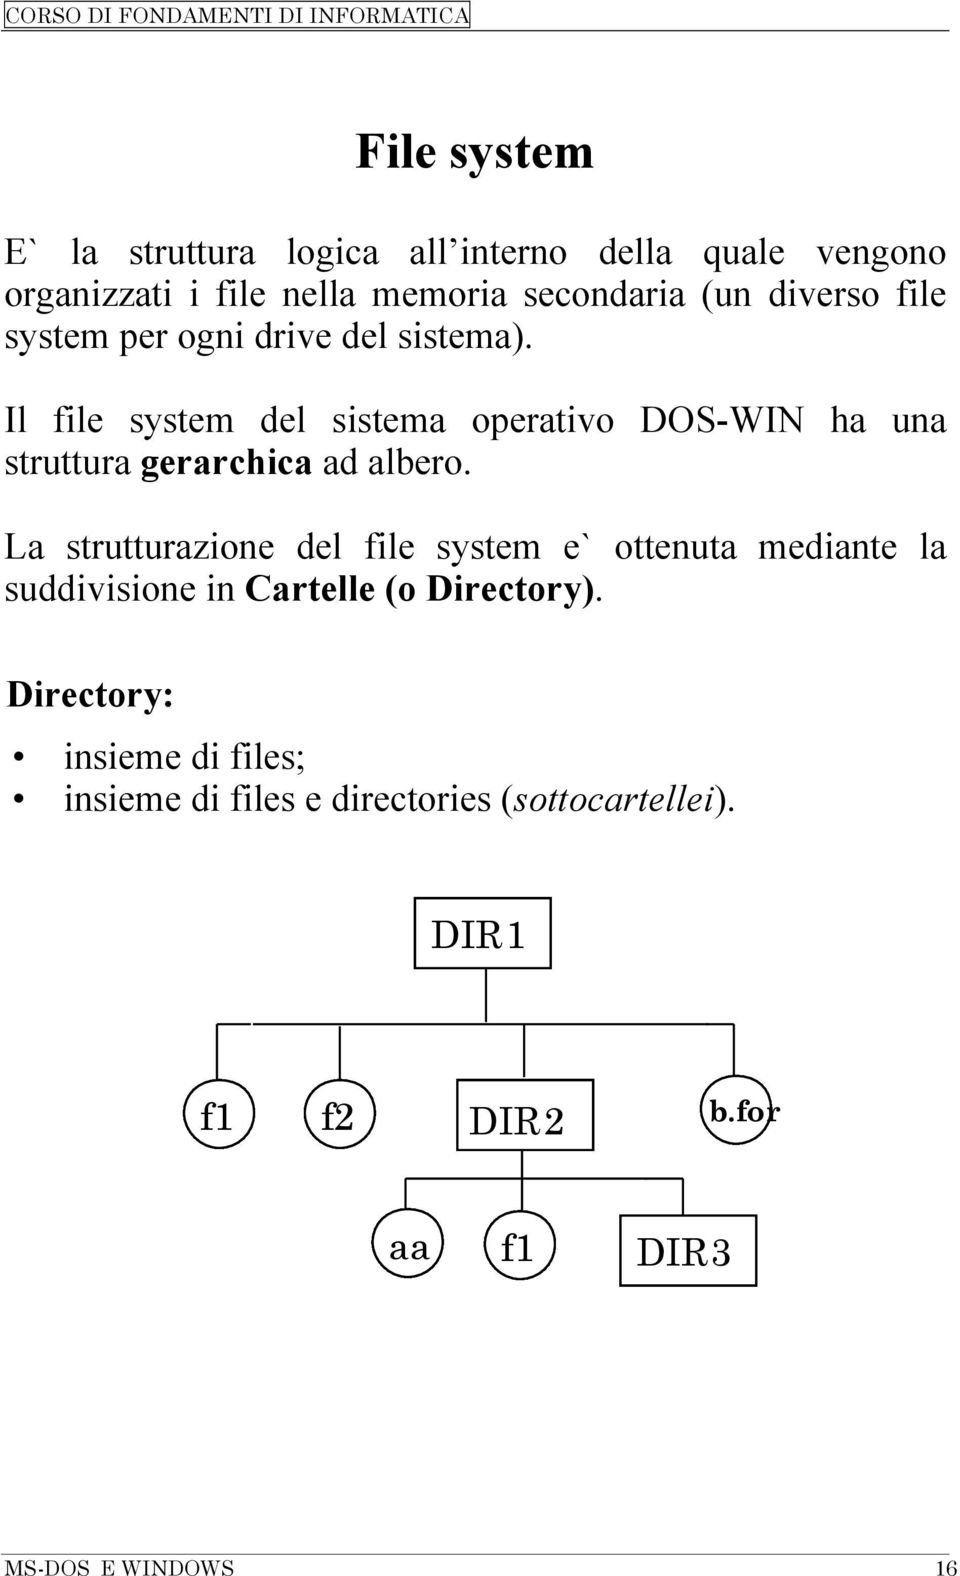 Il file system del sistema operativo DOS-WIN ha una struttura gerarchica ad albero.